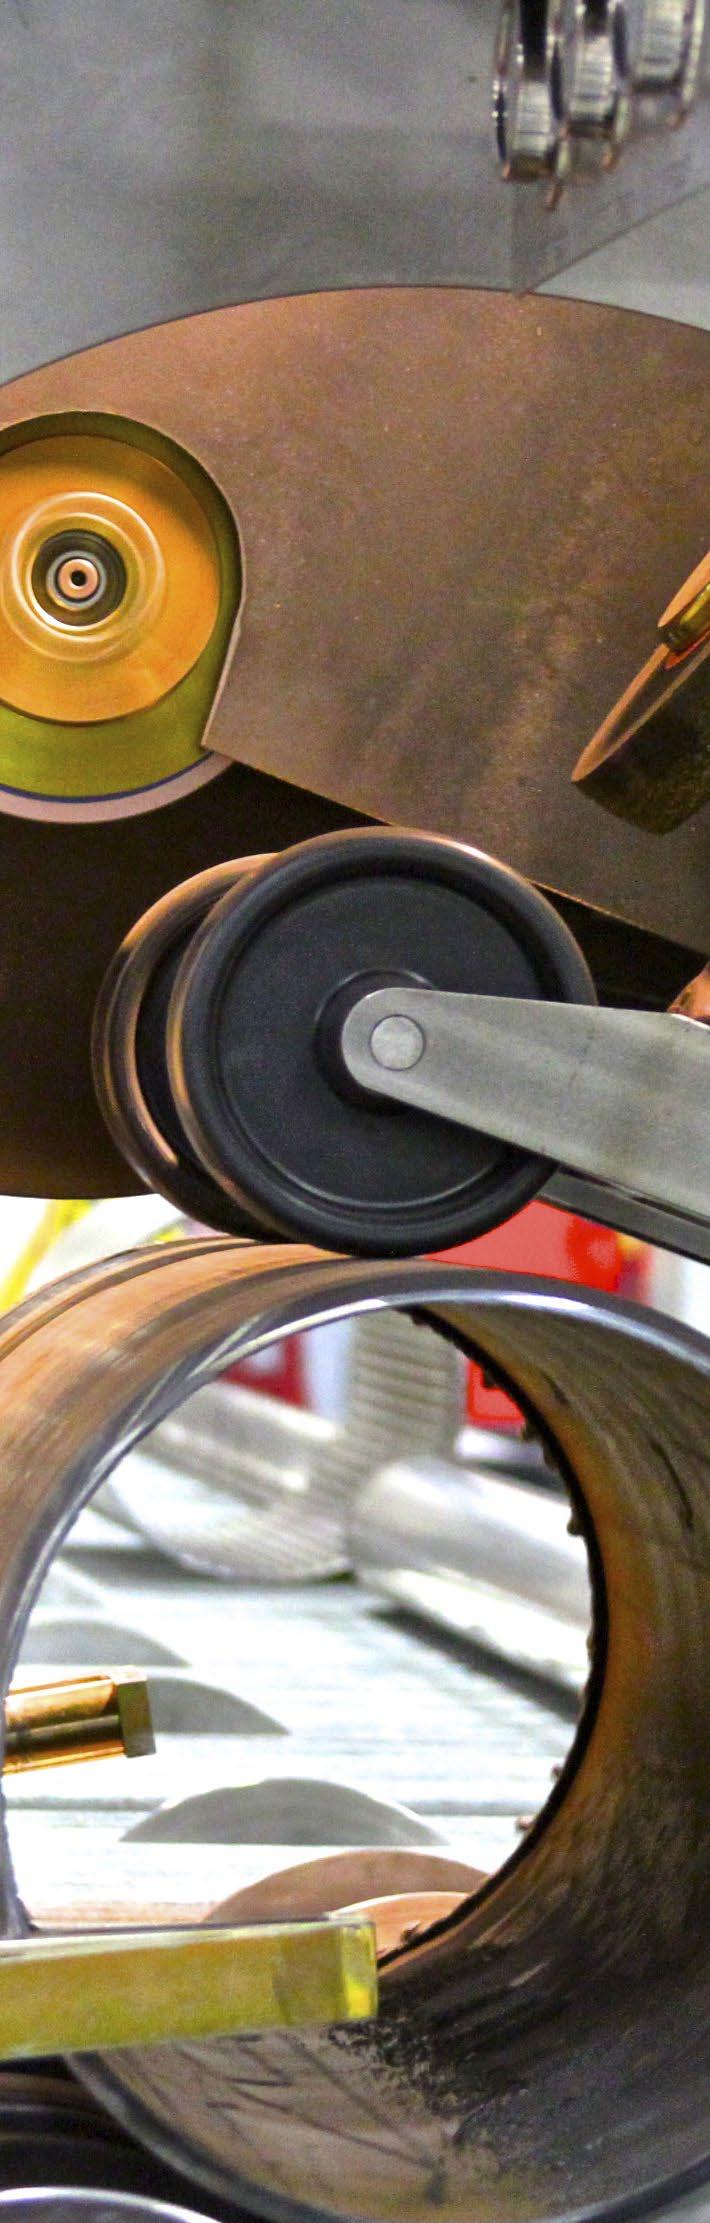 VERNON TOOL VERNON Tool, de Lincoln Electric Cutting Systems, es un fabricante y proveedor global de máquinas de corte para tubería industrial, equipos de biselado de tuberías y maquinaria de corte